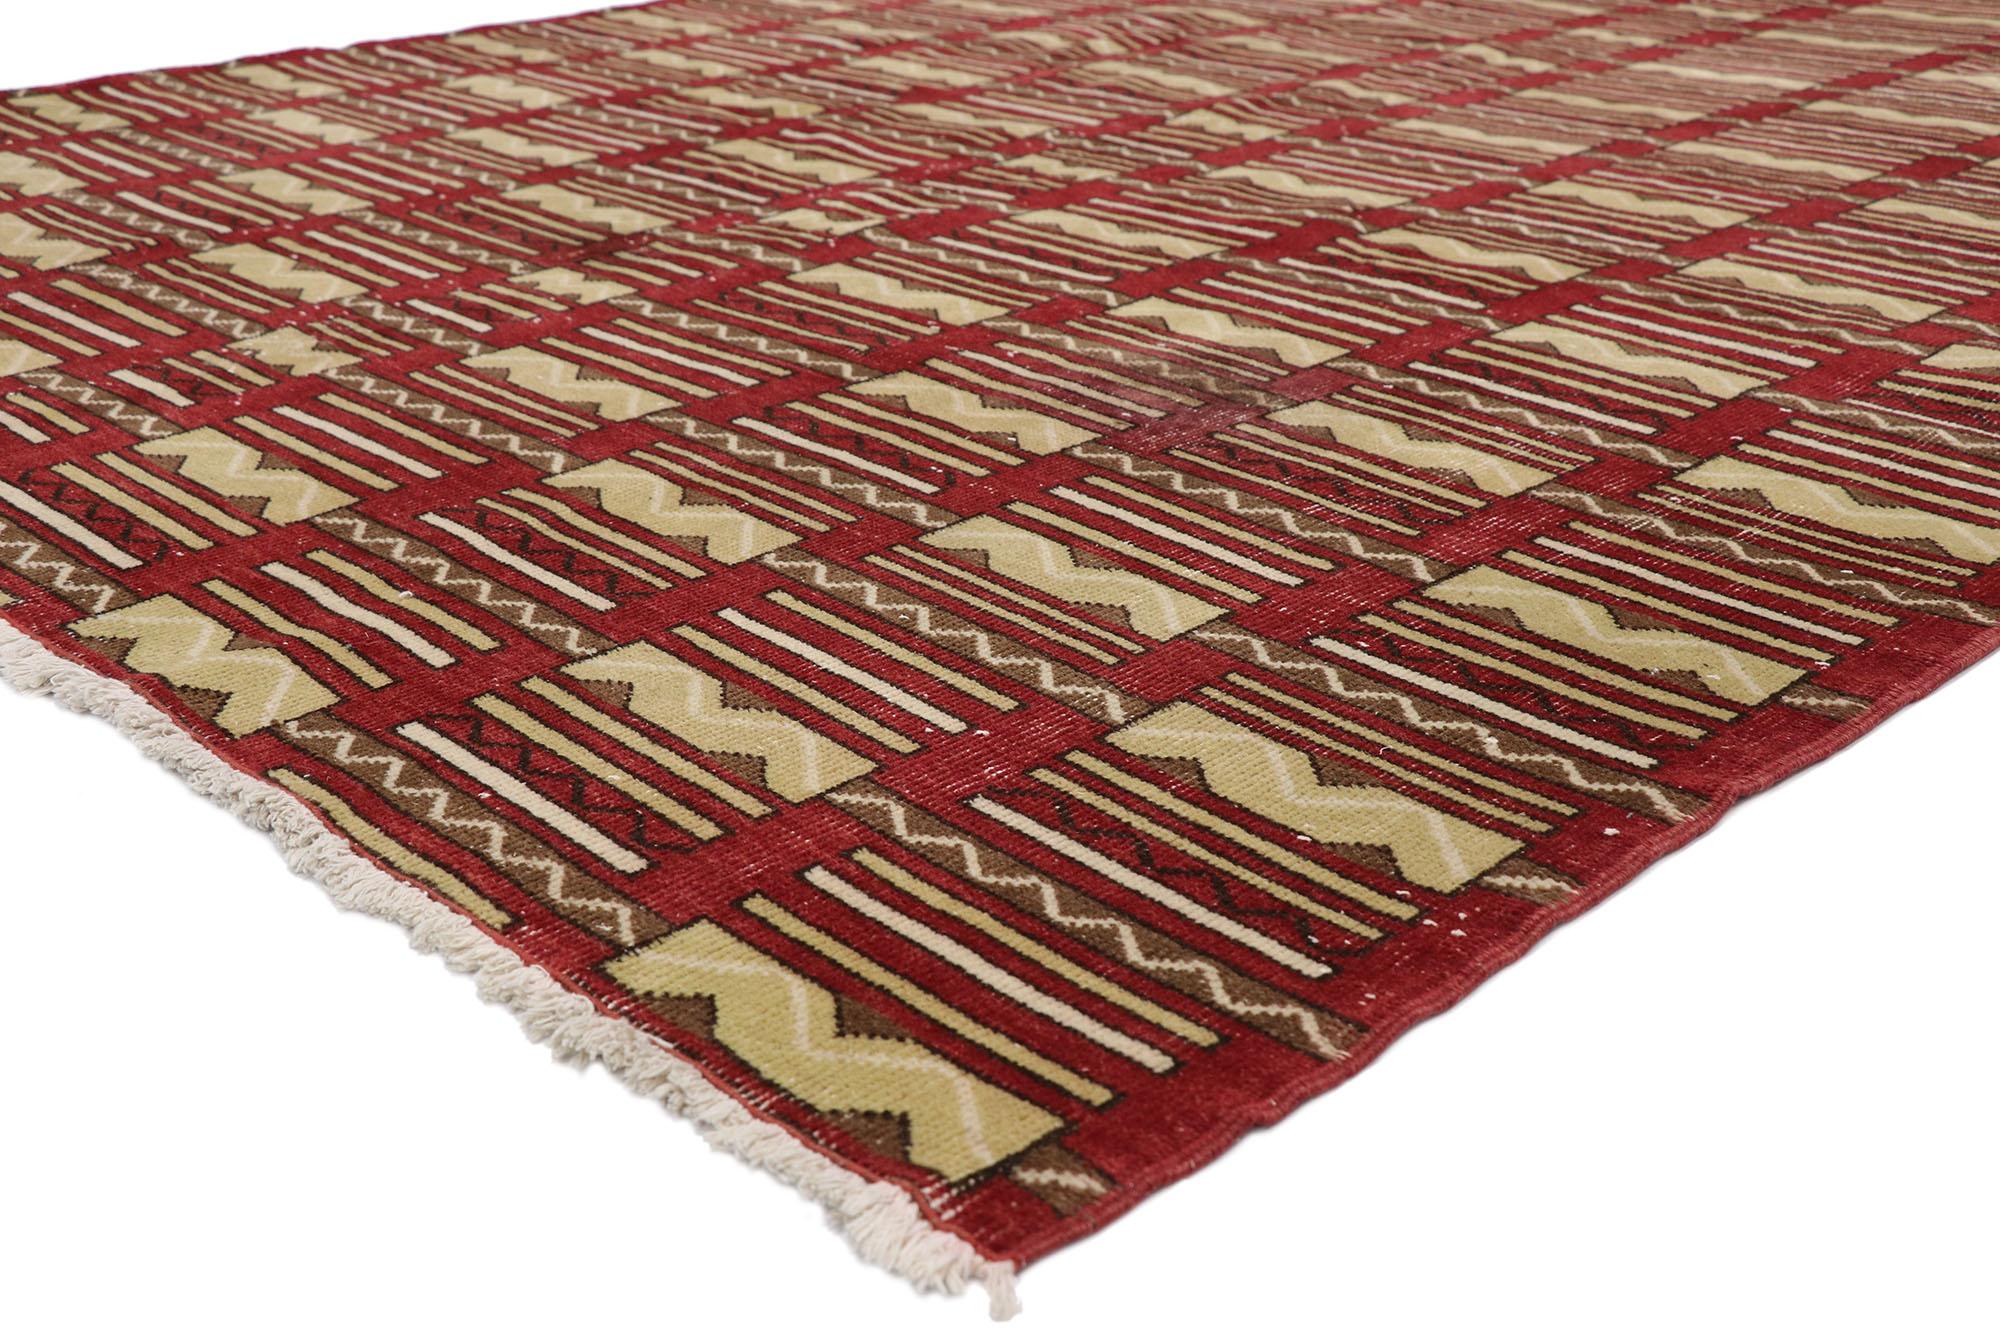 52602, Zeki Muren strapazierter türkischer Sivas-Teppich im modernen Art-Déco-Stil. Mit seiner ausgewogenen Symmetrie und seinen kühnen geometrischen Formen, kombiniert mit einer liebevollen, zeitlosen Komposition, ist dieser handgeknüpfte Teppich